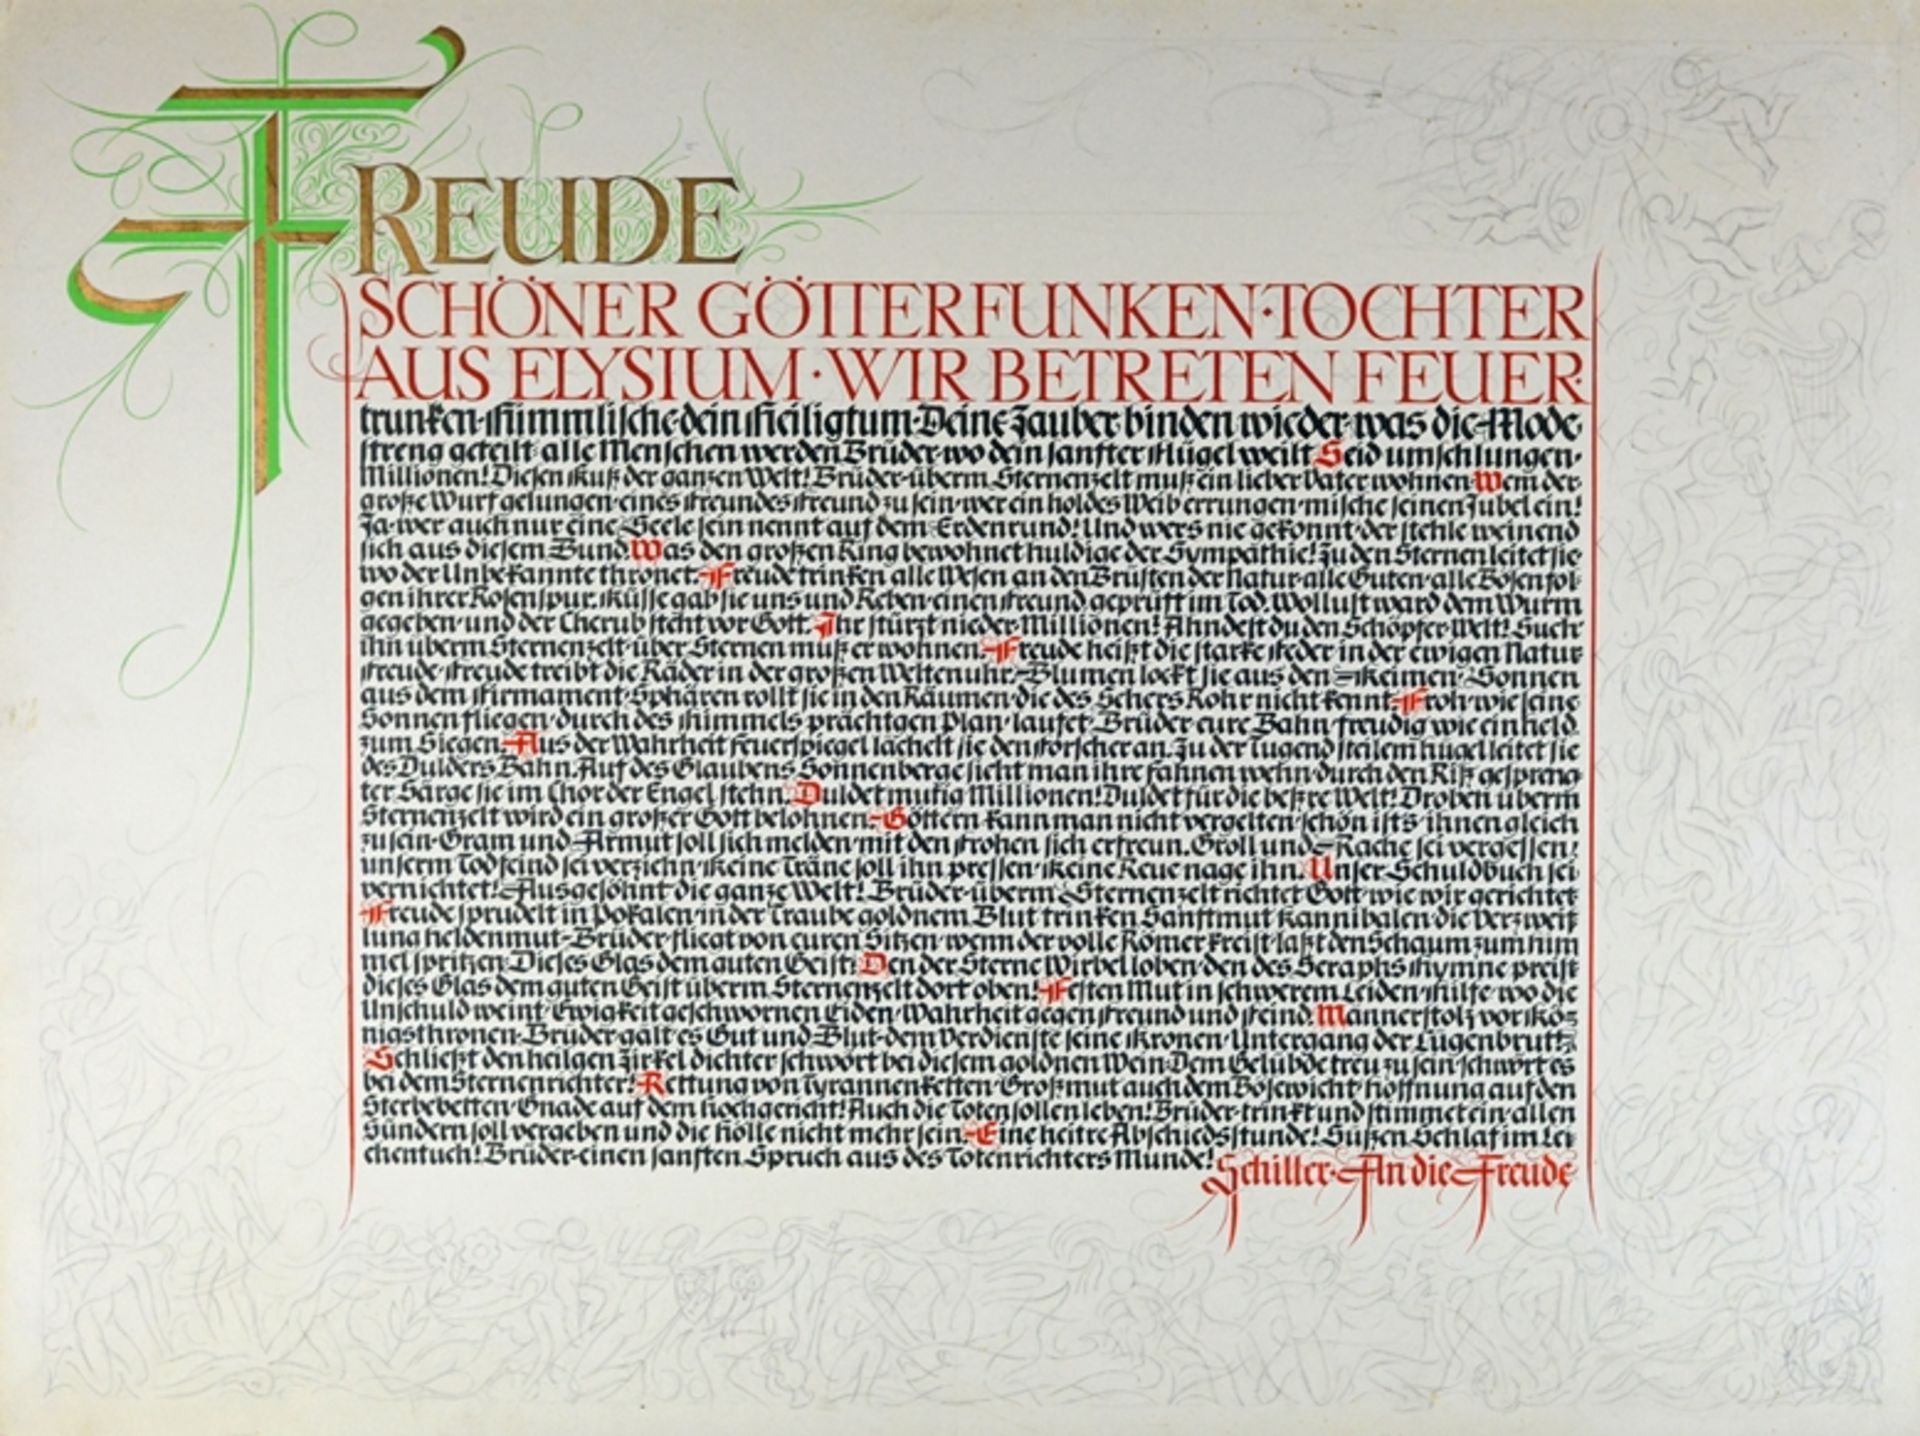 Zwei Kalligrafie-Arbeiten, eine auf Karton mit "An die Freude" von Friedrich Schiller, und eine